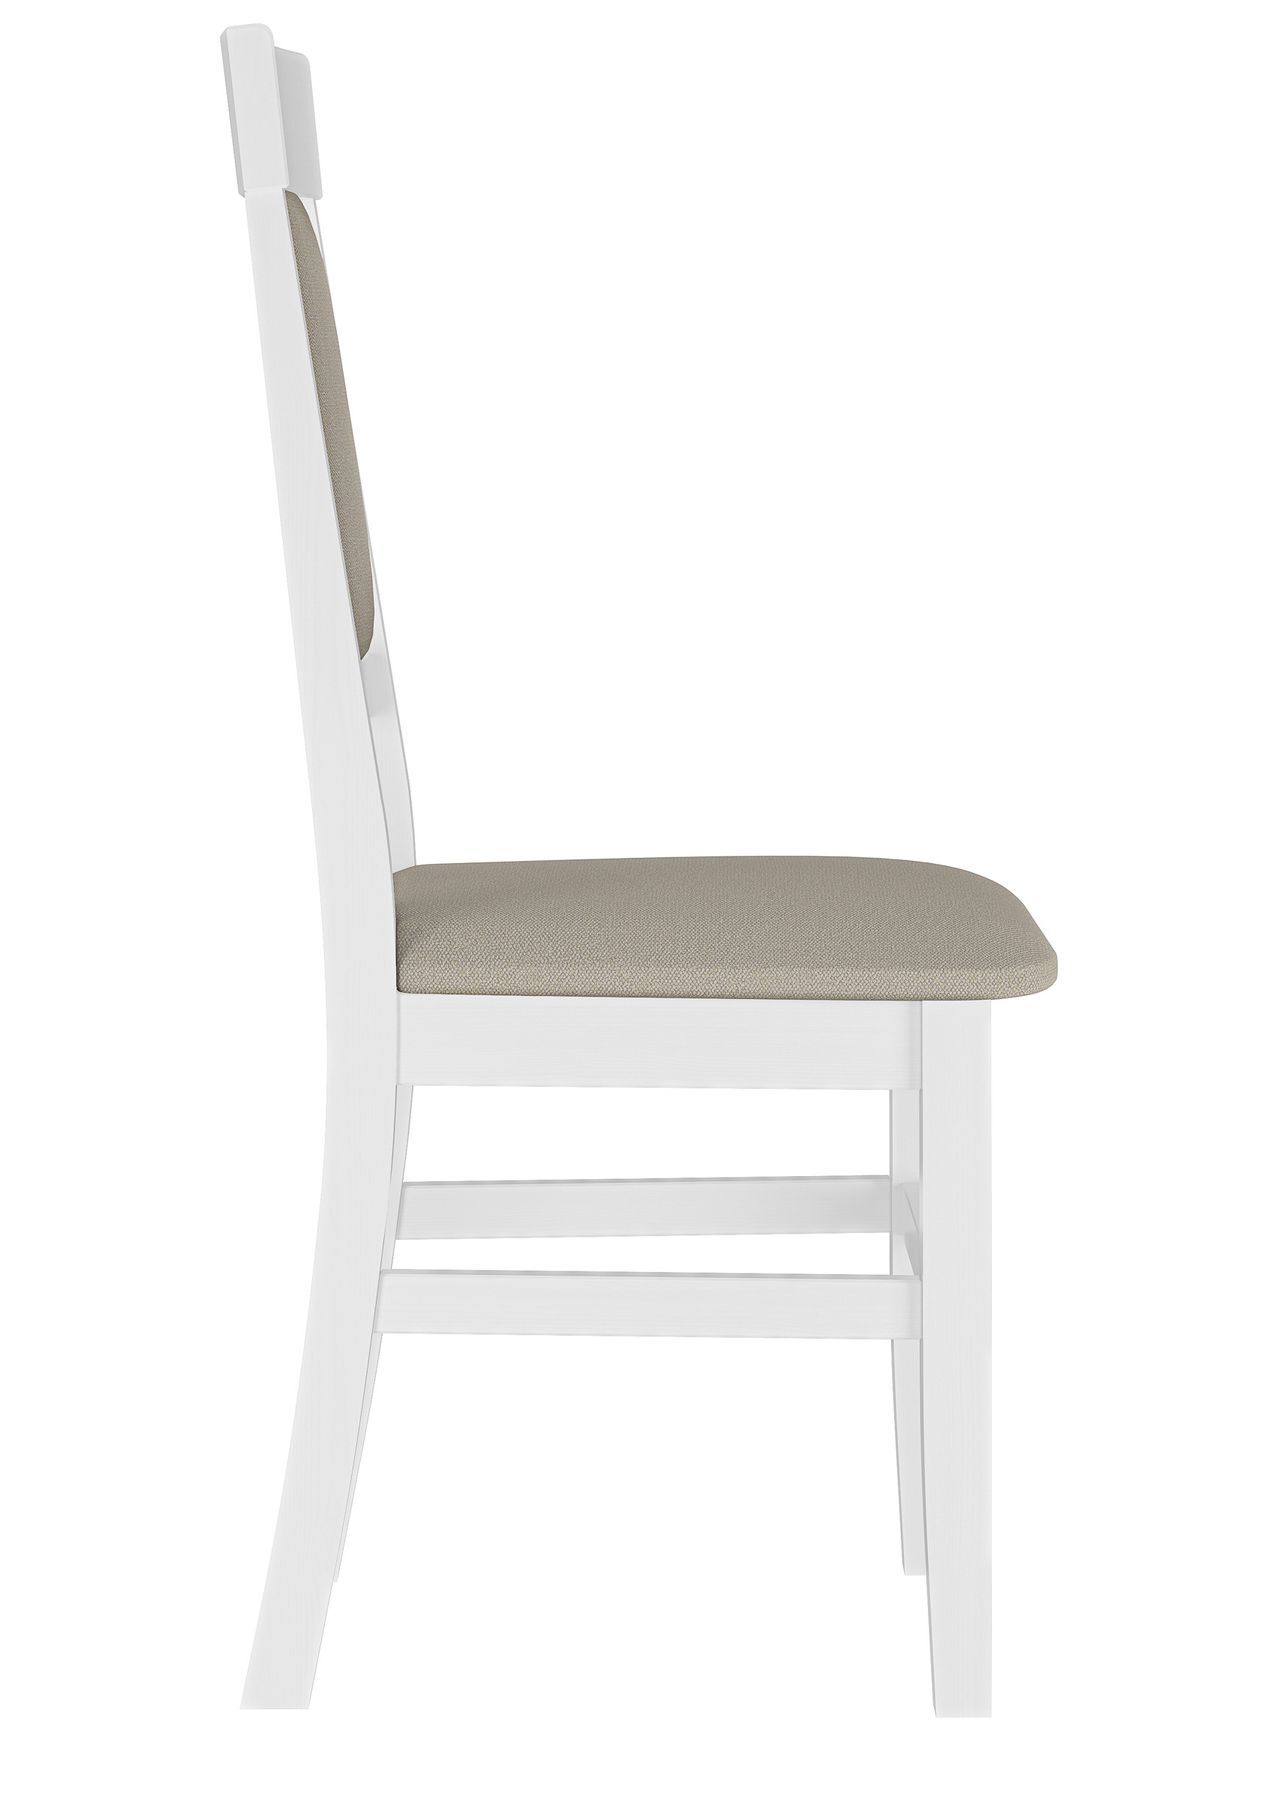 Seitenansicht weiß-taupe Stuhl